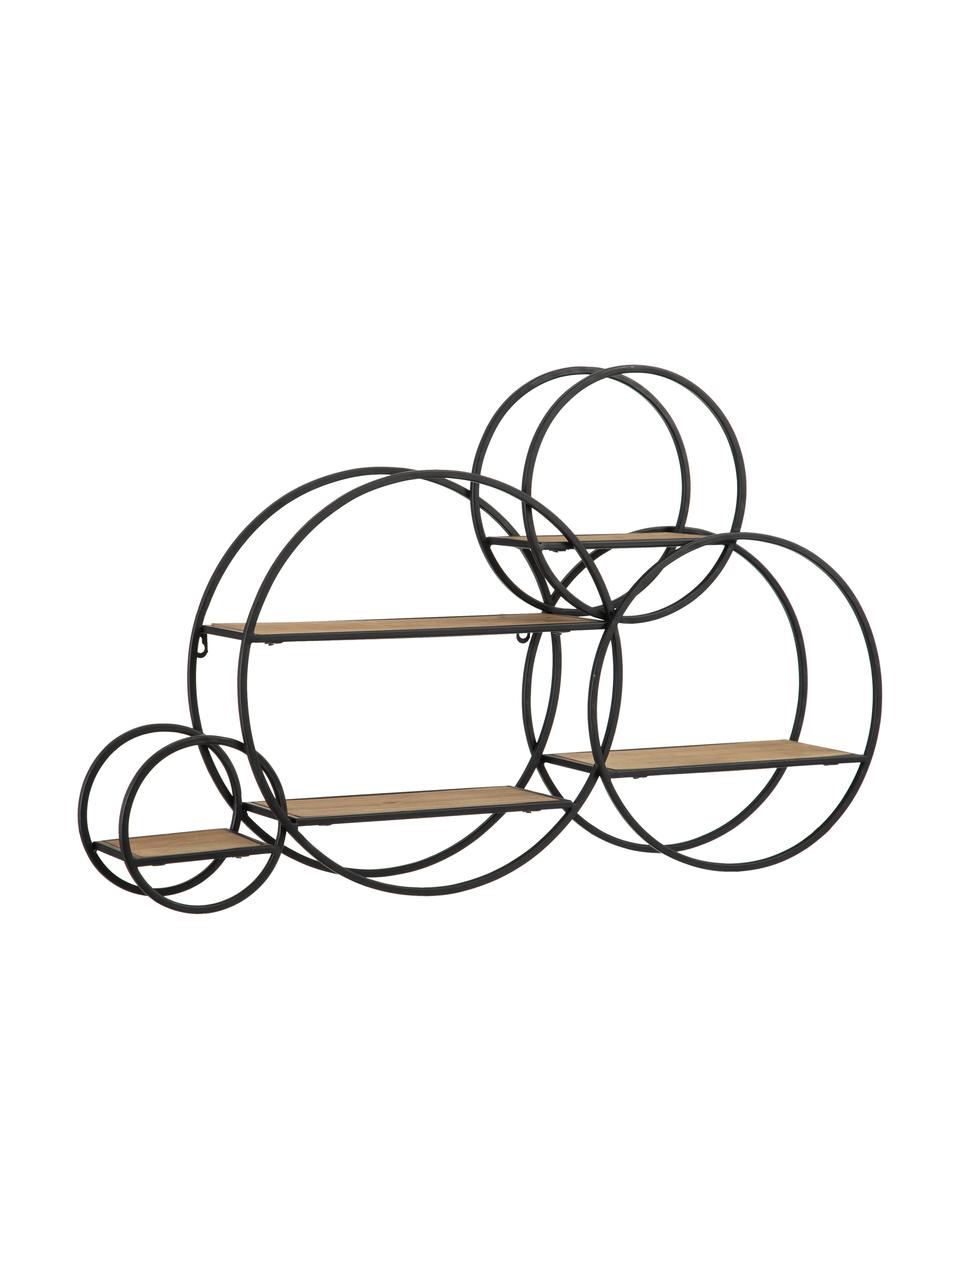 Półka ścienna z drewna i metalu Circles, Stelaż: metal powlekany, Czarny, brązowy, S 84 x W 54 cm